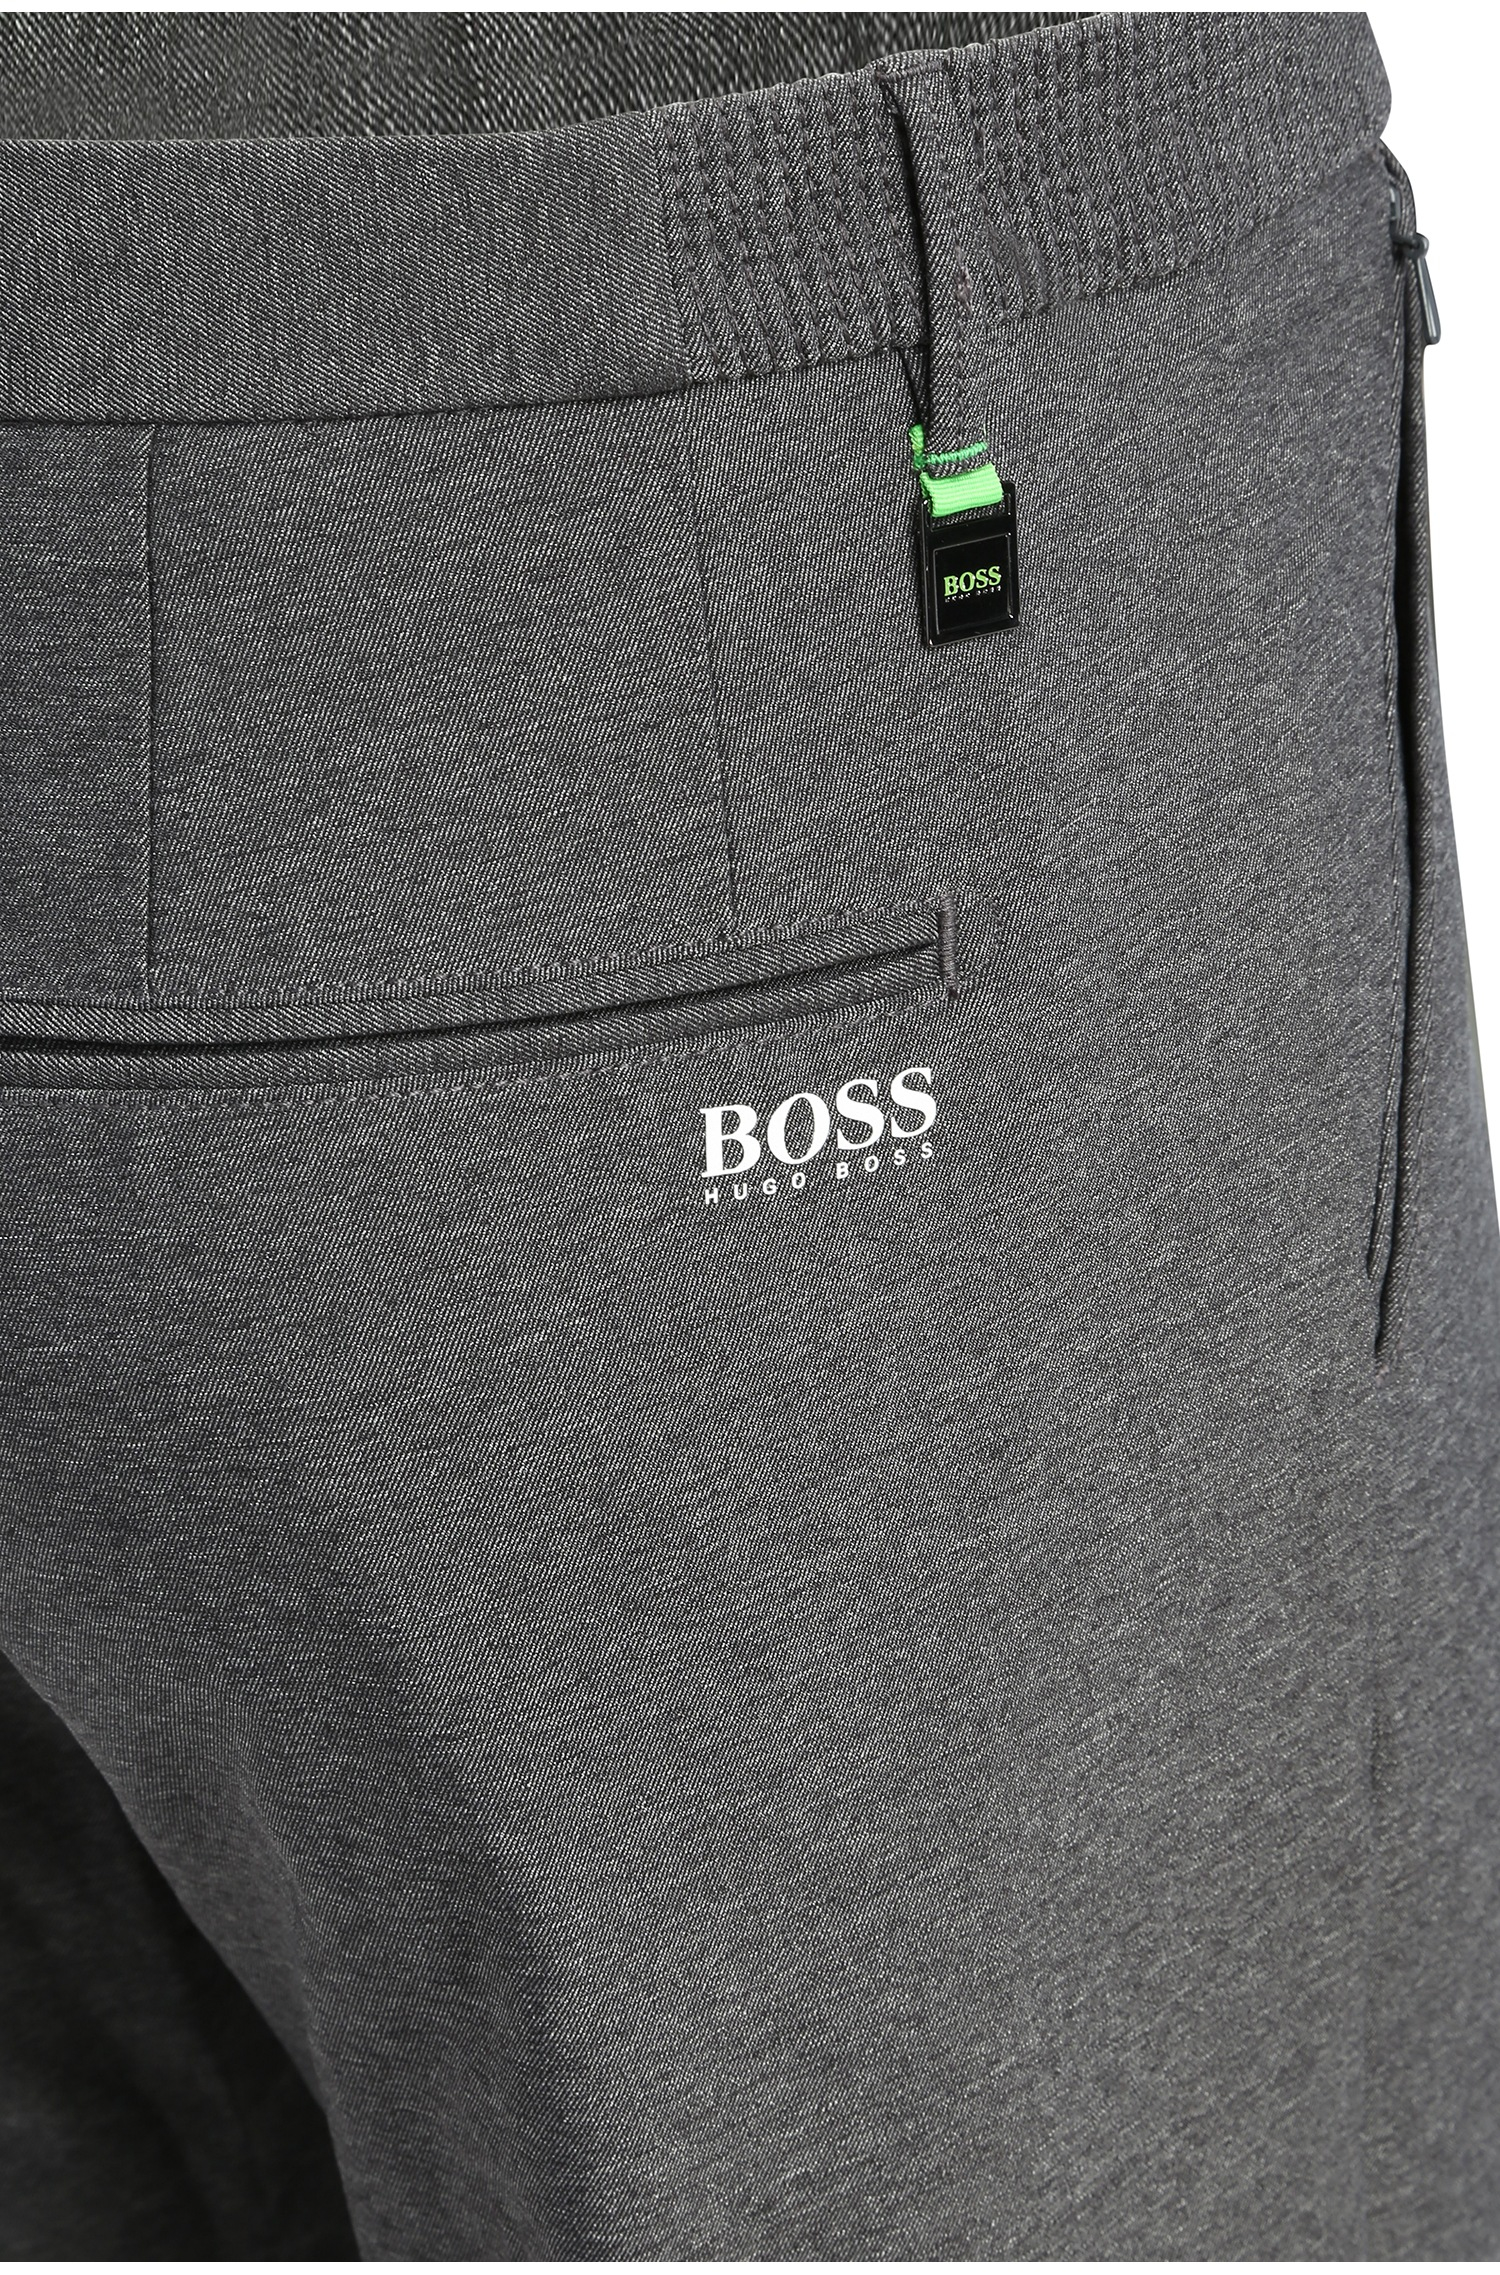 BOSS Green 'hakan' | Slim Fit, Golf Pants in Black for Men Lyst